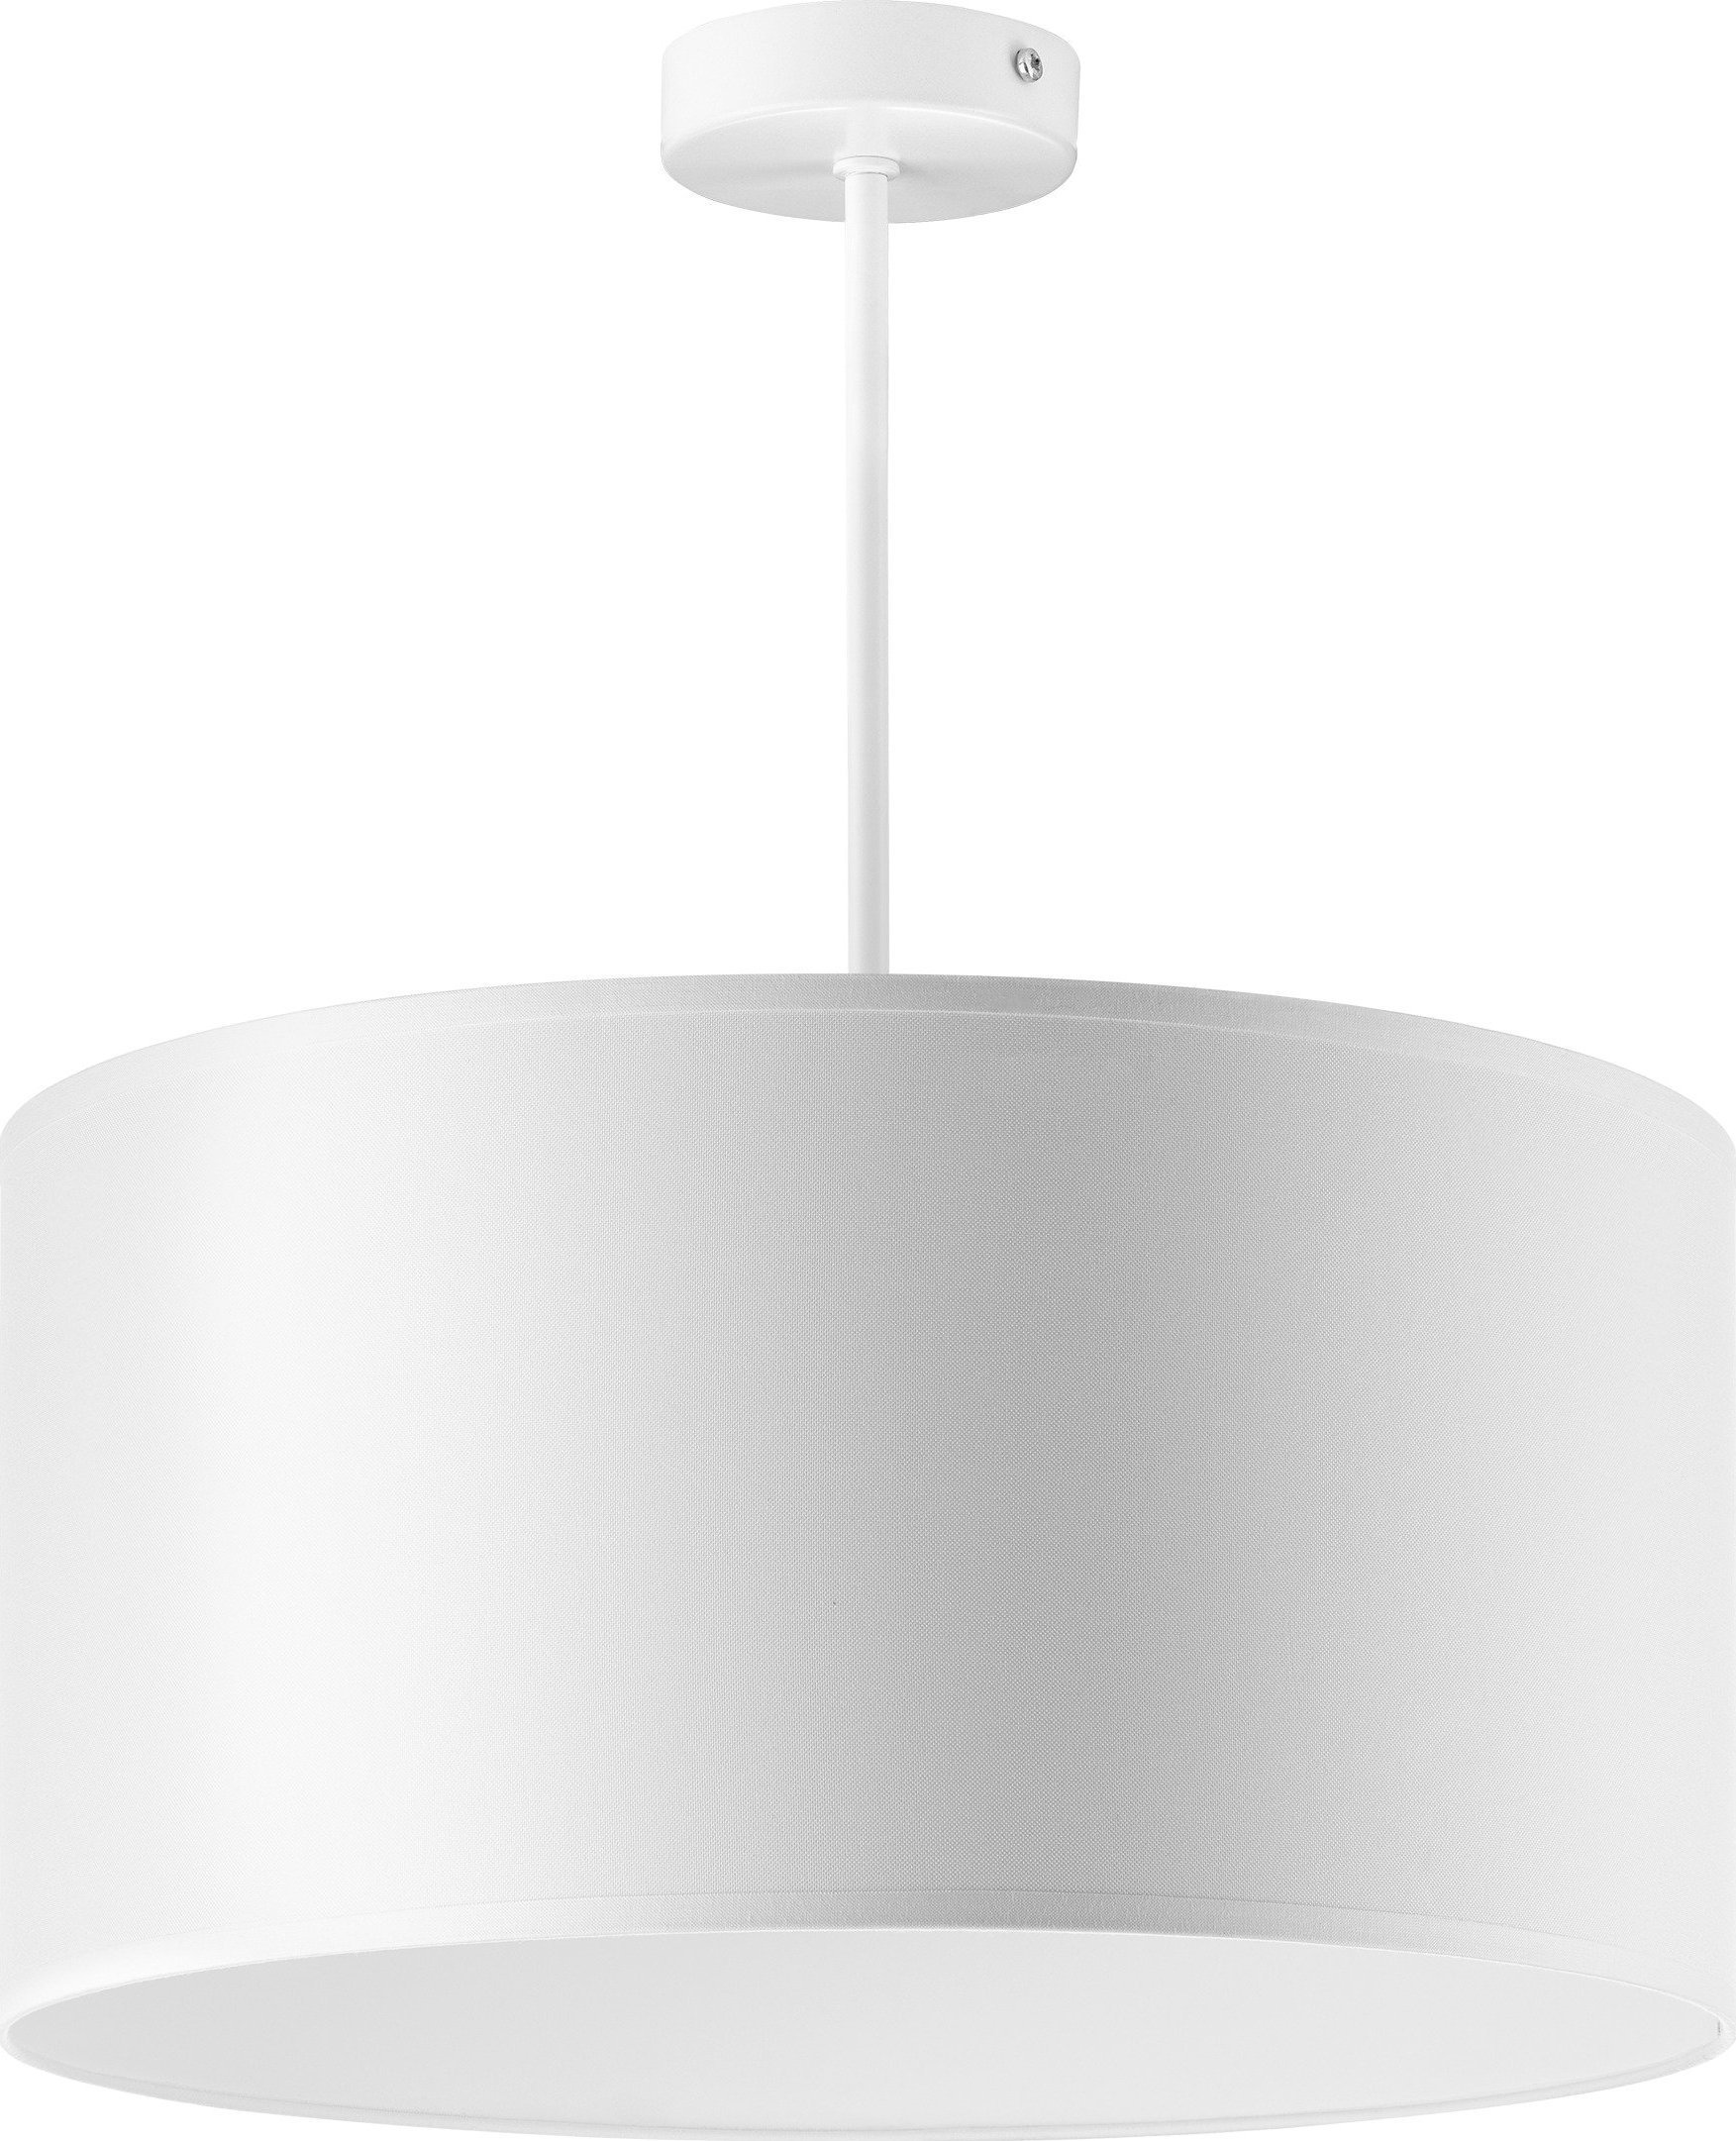 Lampă suspendată Orno ROLLO, lampă suspendată, putere max. 1x60W, alb, scurt